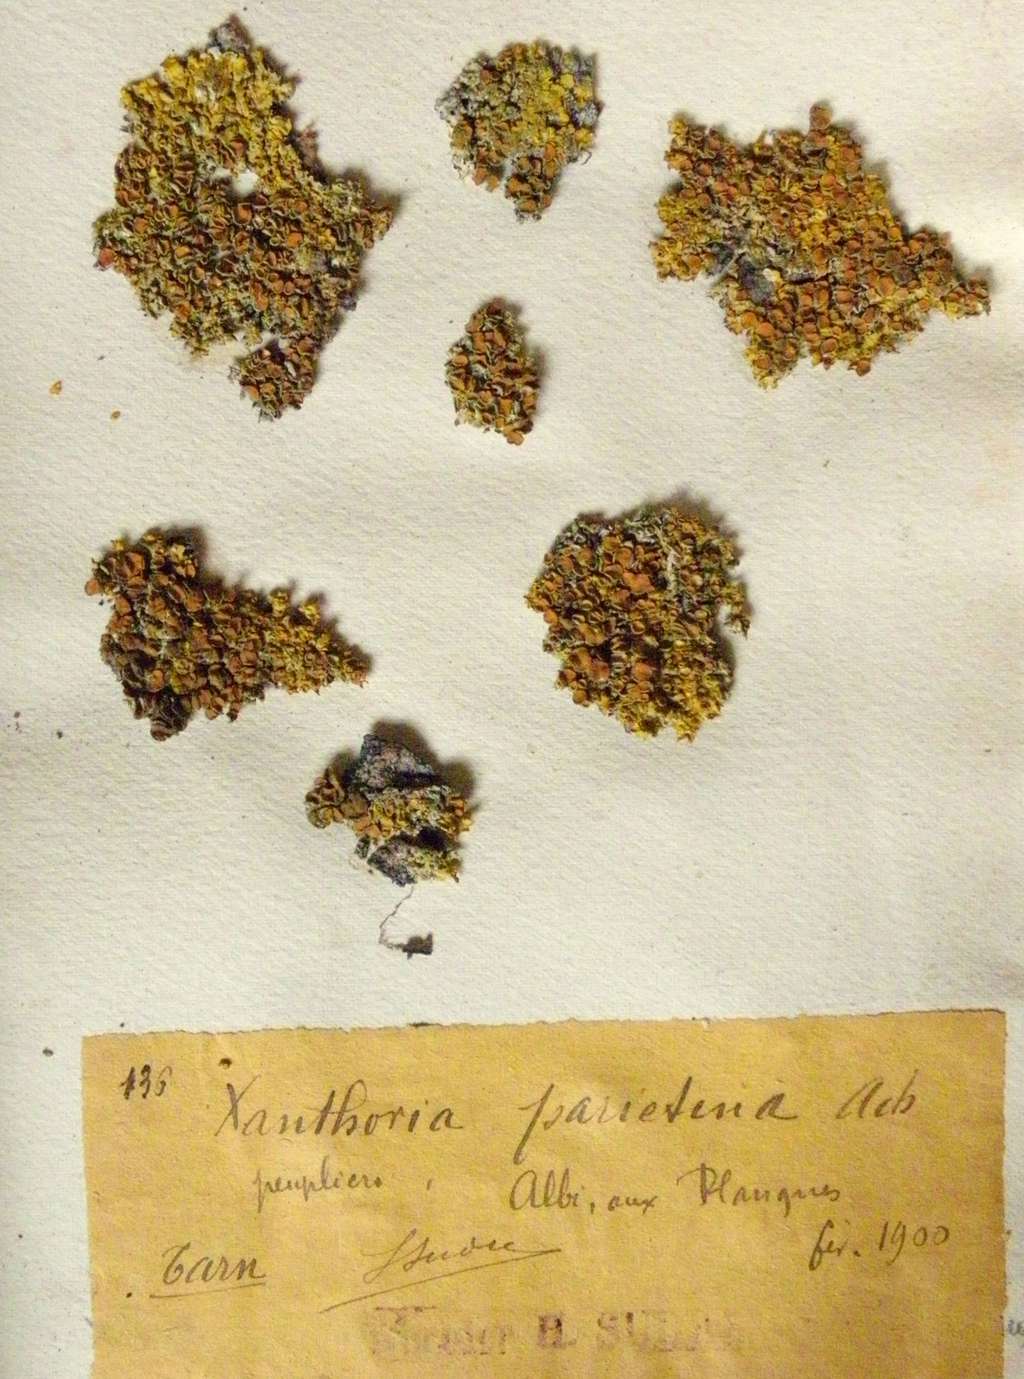 Échantillons d’herbier de <em>Xanthoria parietina</em> collectés dans le Tarn par Henri Sudre en 1900 (Université Paul Sabatier, Toulouse). © Yannick Agnan - Tous droits réservés